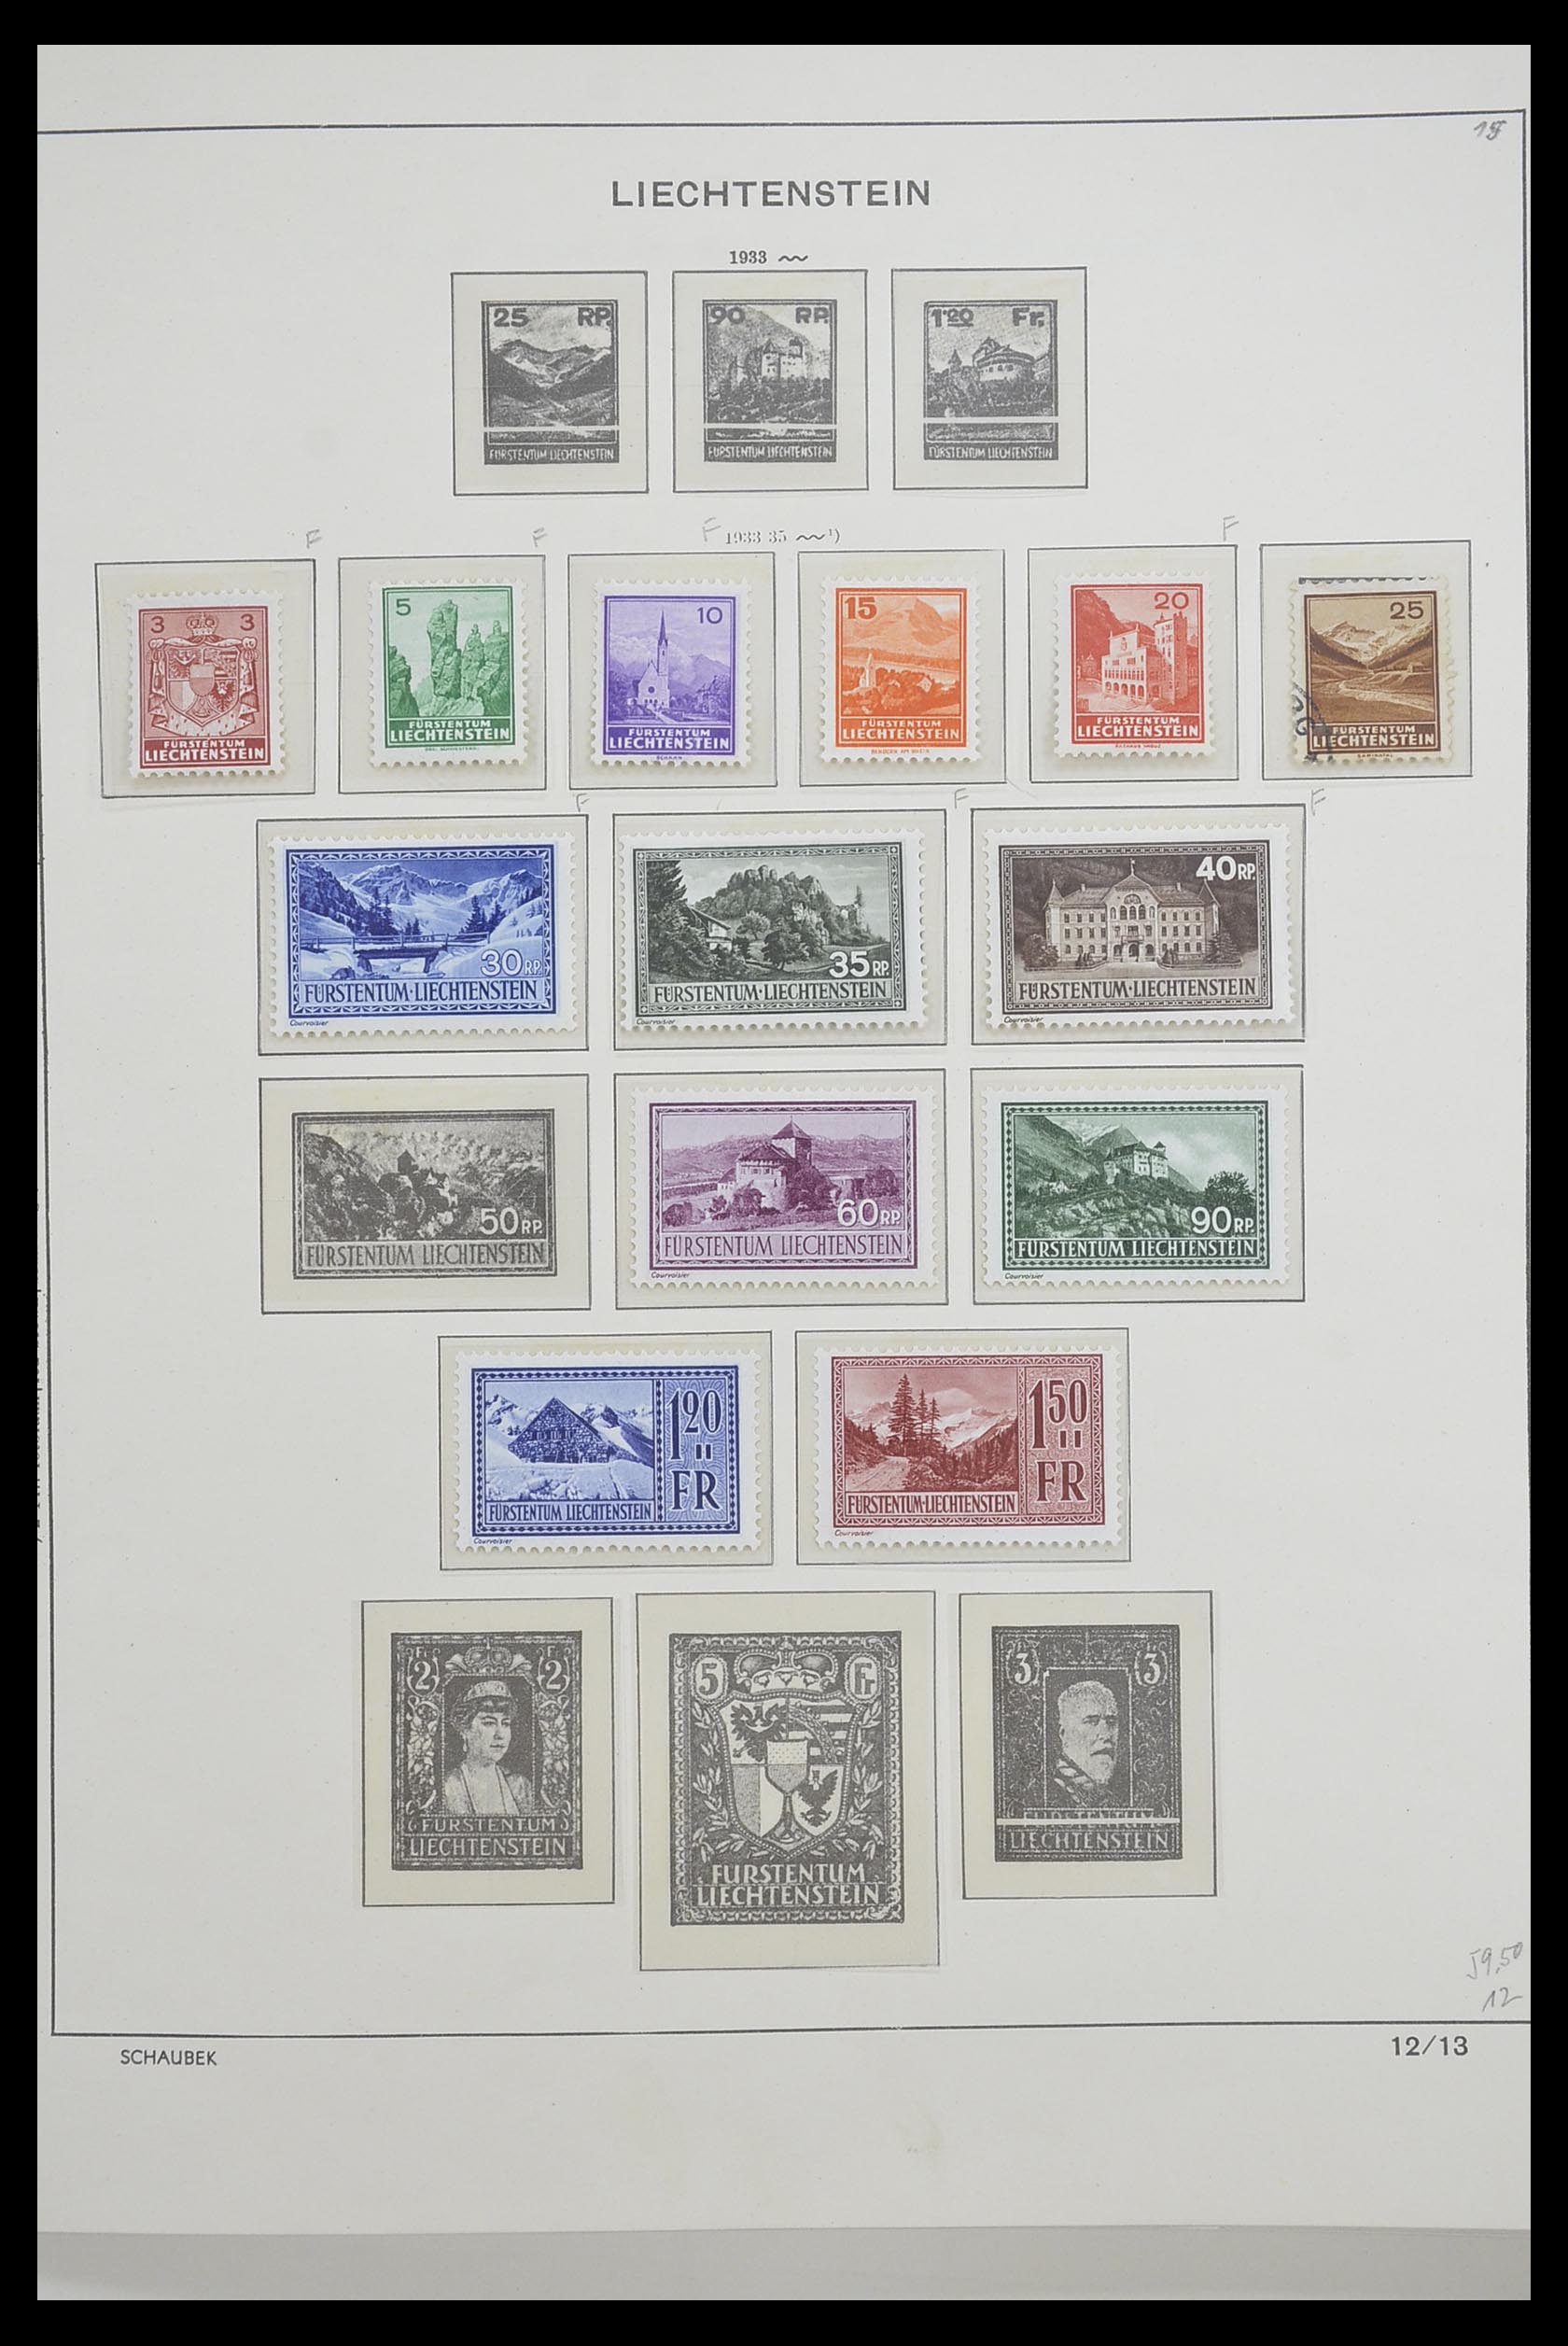 33274 011 - Stamp collection 33274 Liechtenstein 1912-1996.